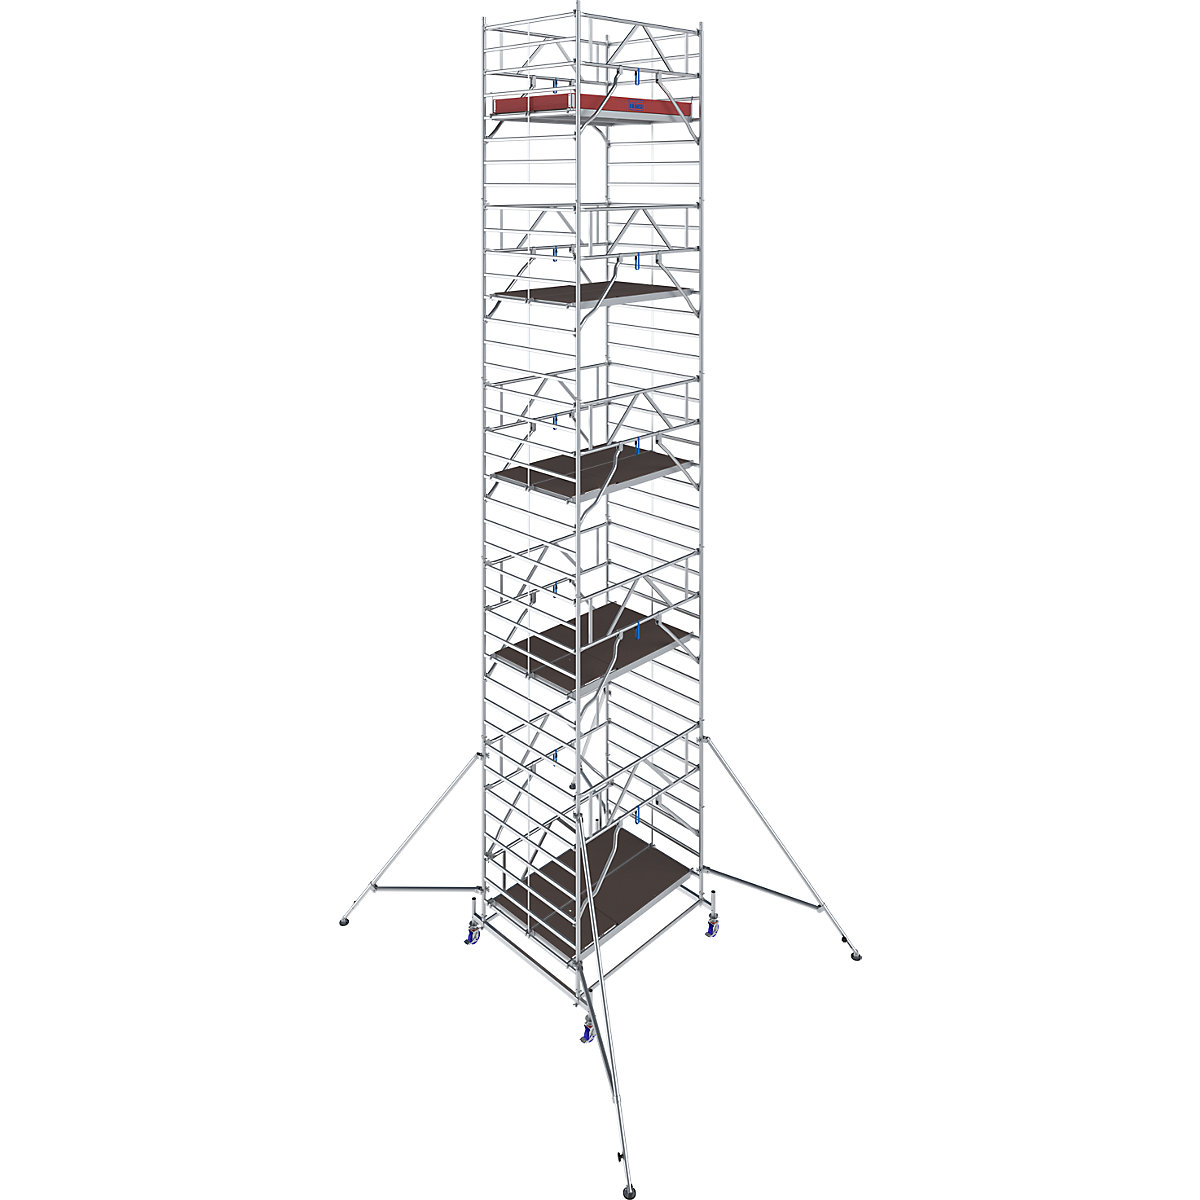 Échafaudage roulant STABILO série 50 – KRAUSE, longueur plate-forme 2,50 m, hauteur de travail 11,40 m-3